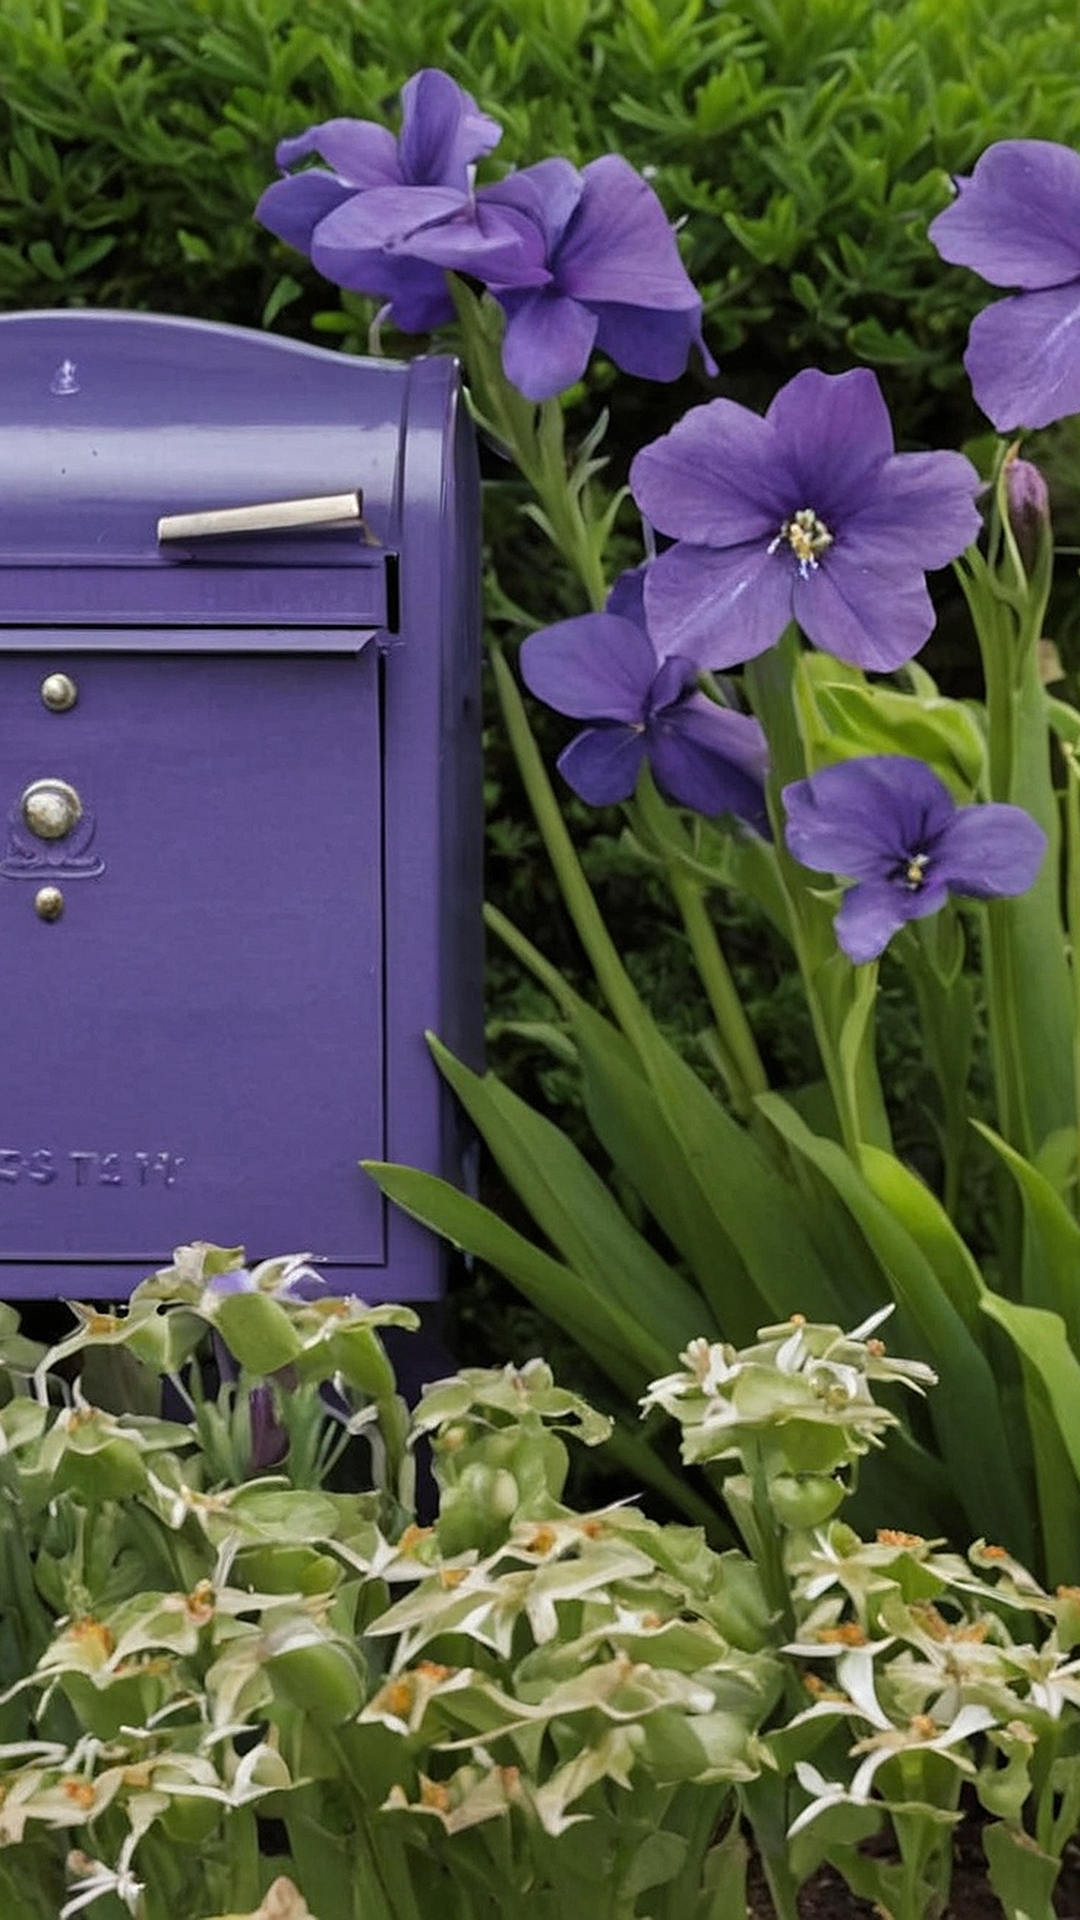 Mailbox Flower Haven: Garden Bed Ideas